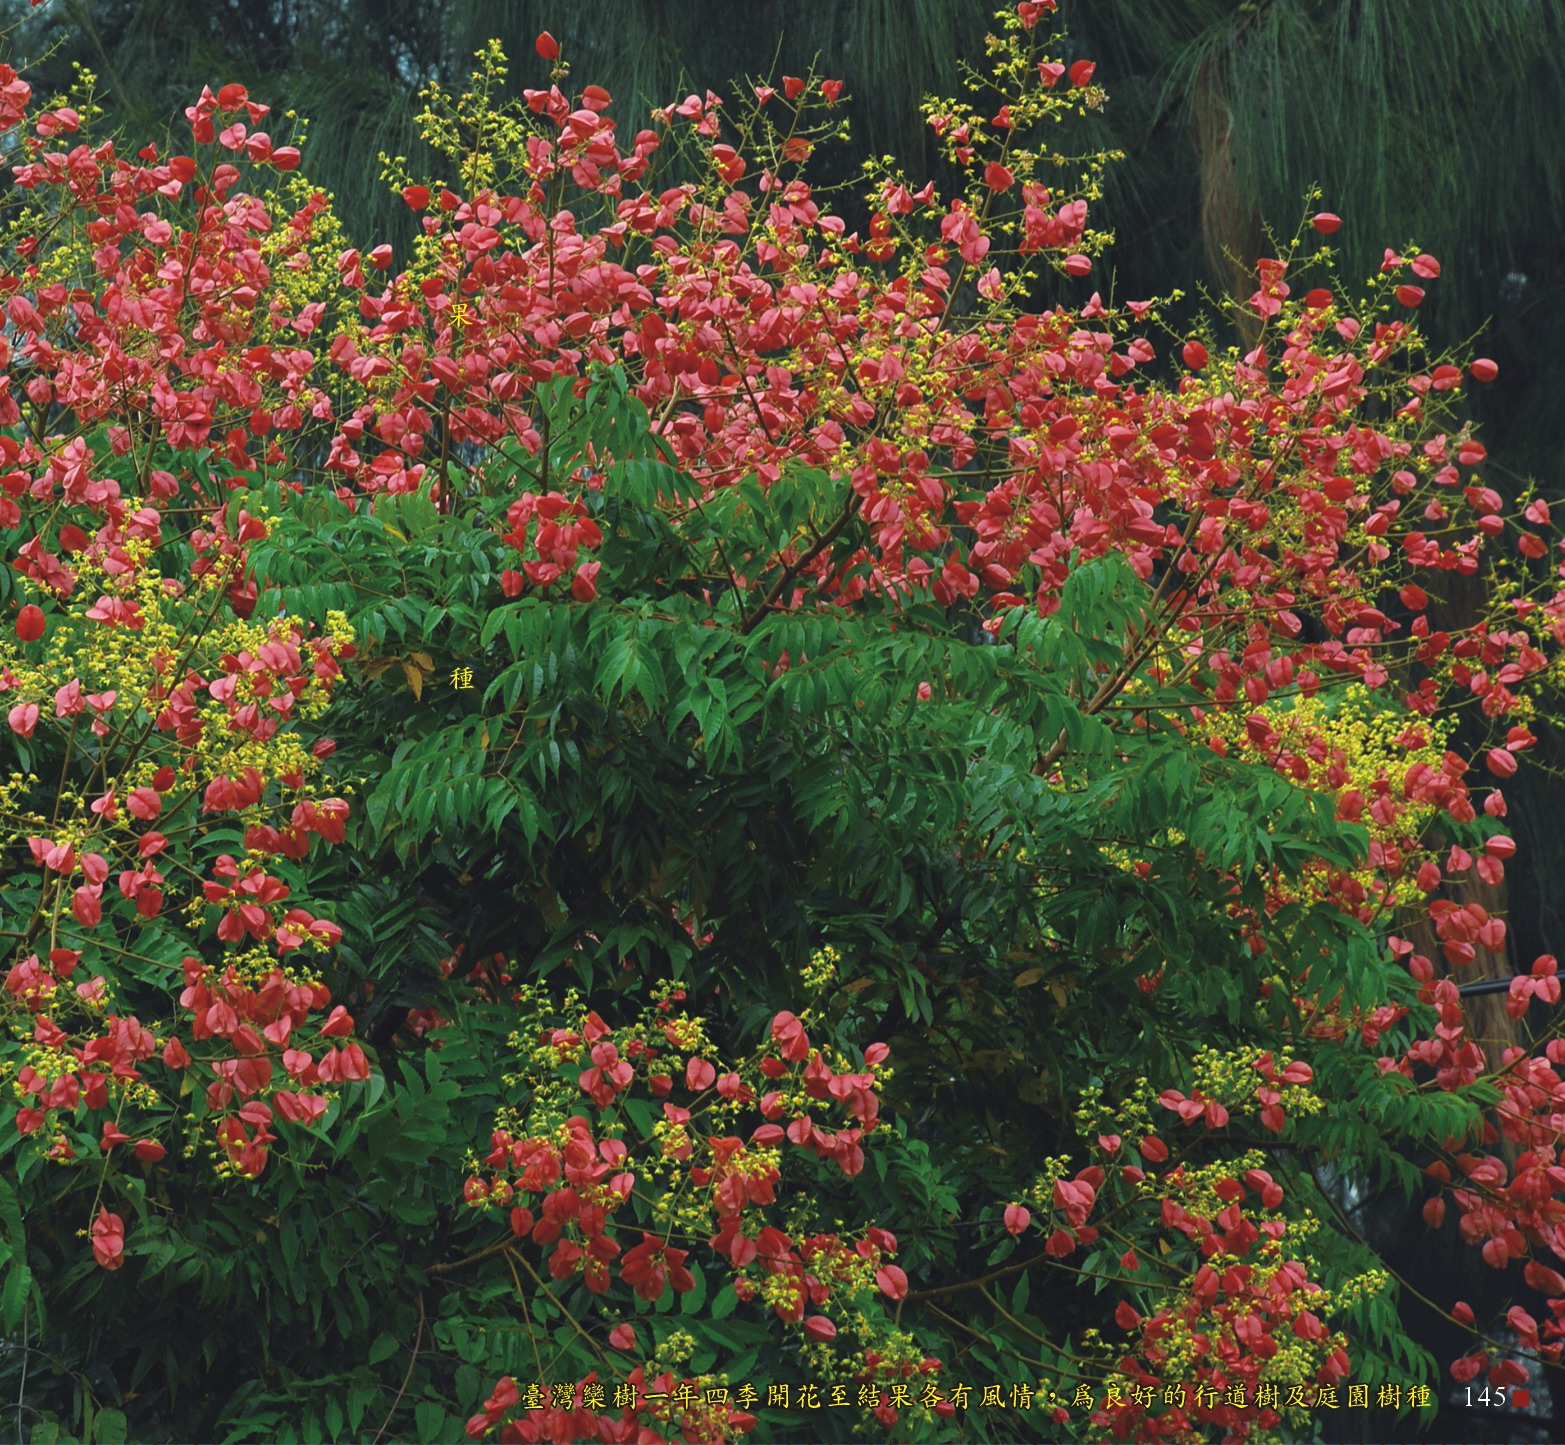 臺灣欒樹一年四季開花至結果各有風情，為良好的行道樹及庭園樹種